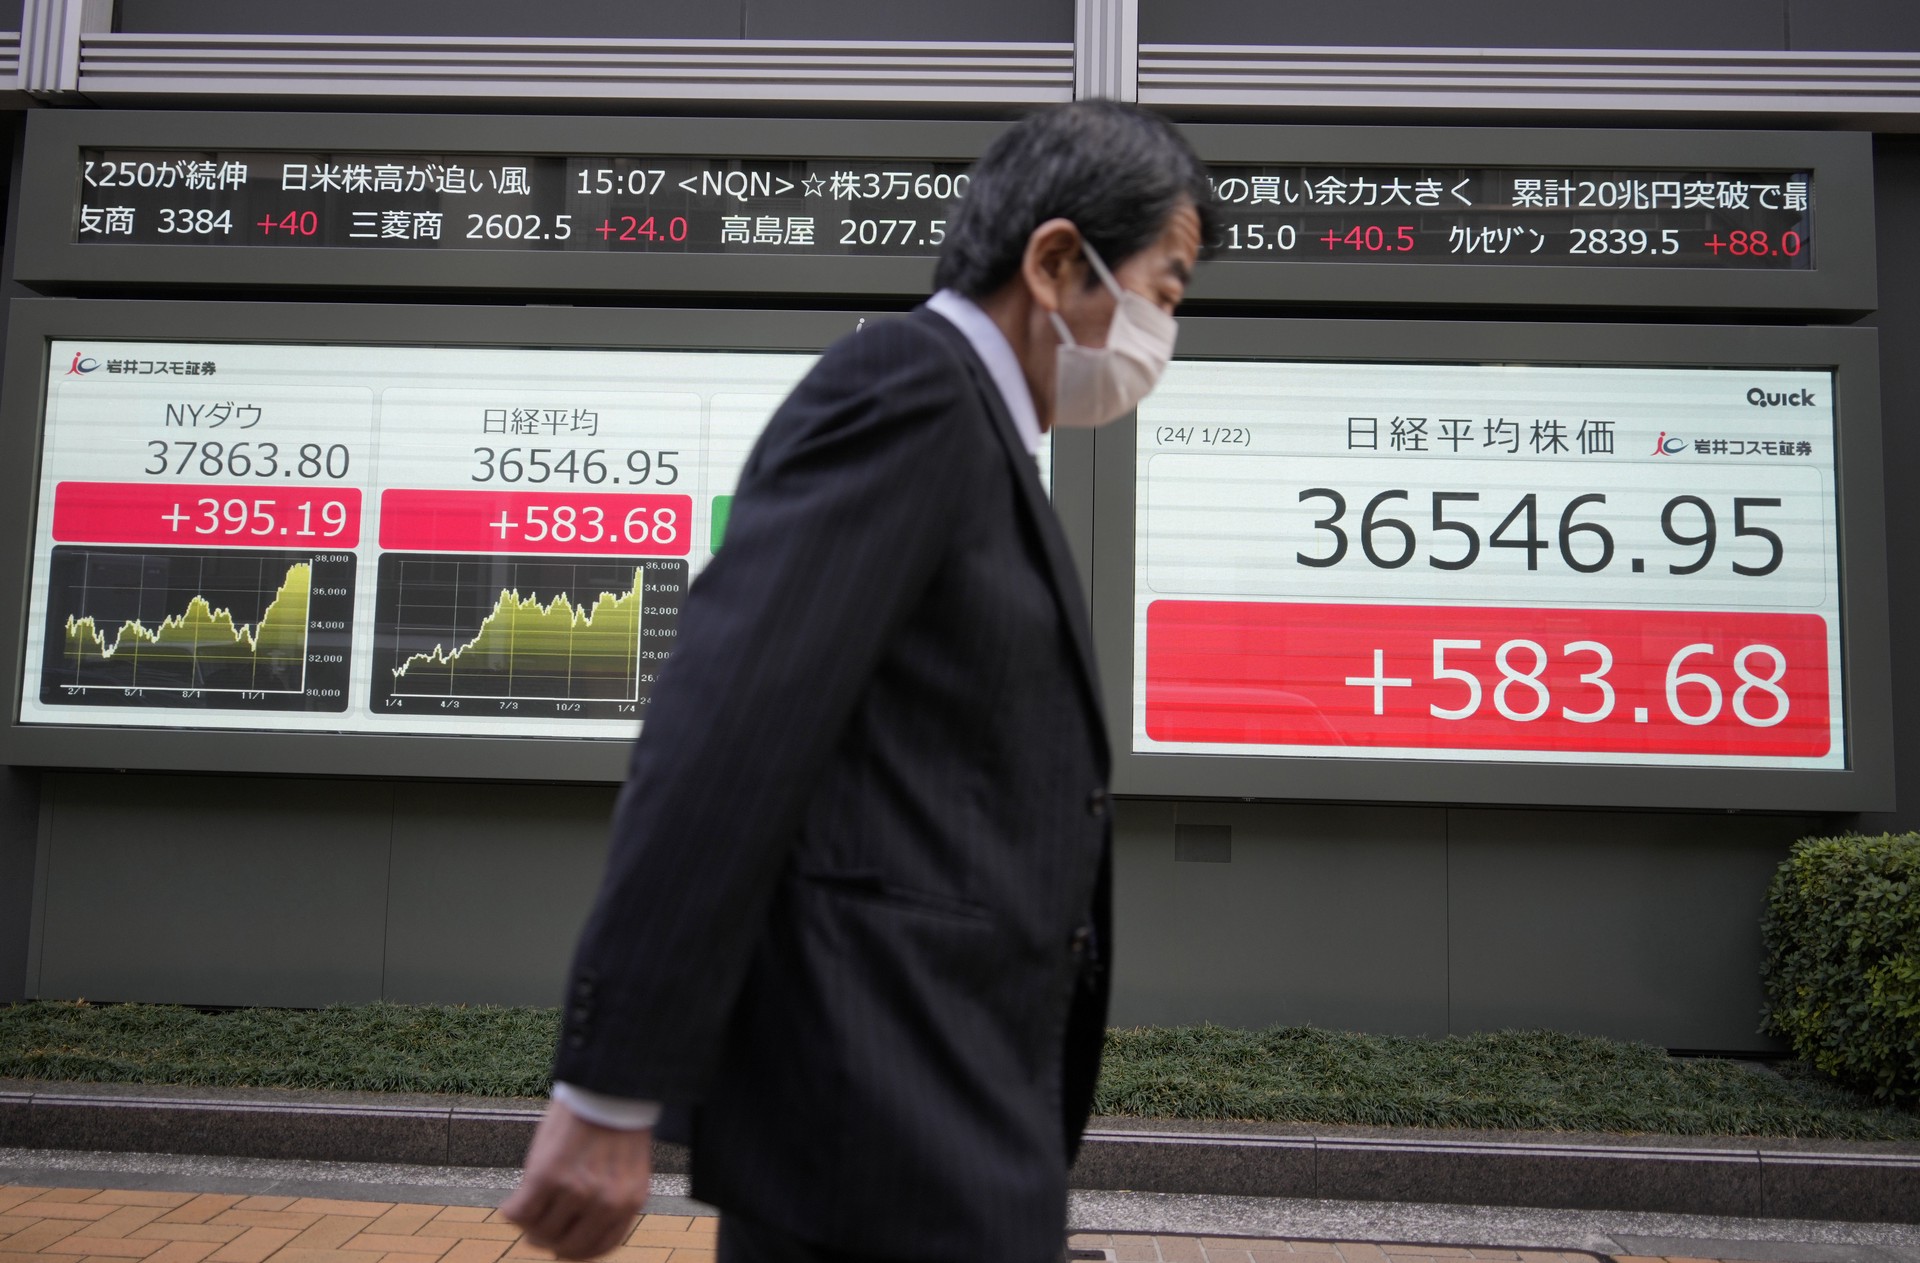 Германия, Великобритания, а теперь и Япония: почему мир погружается в рецессию